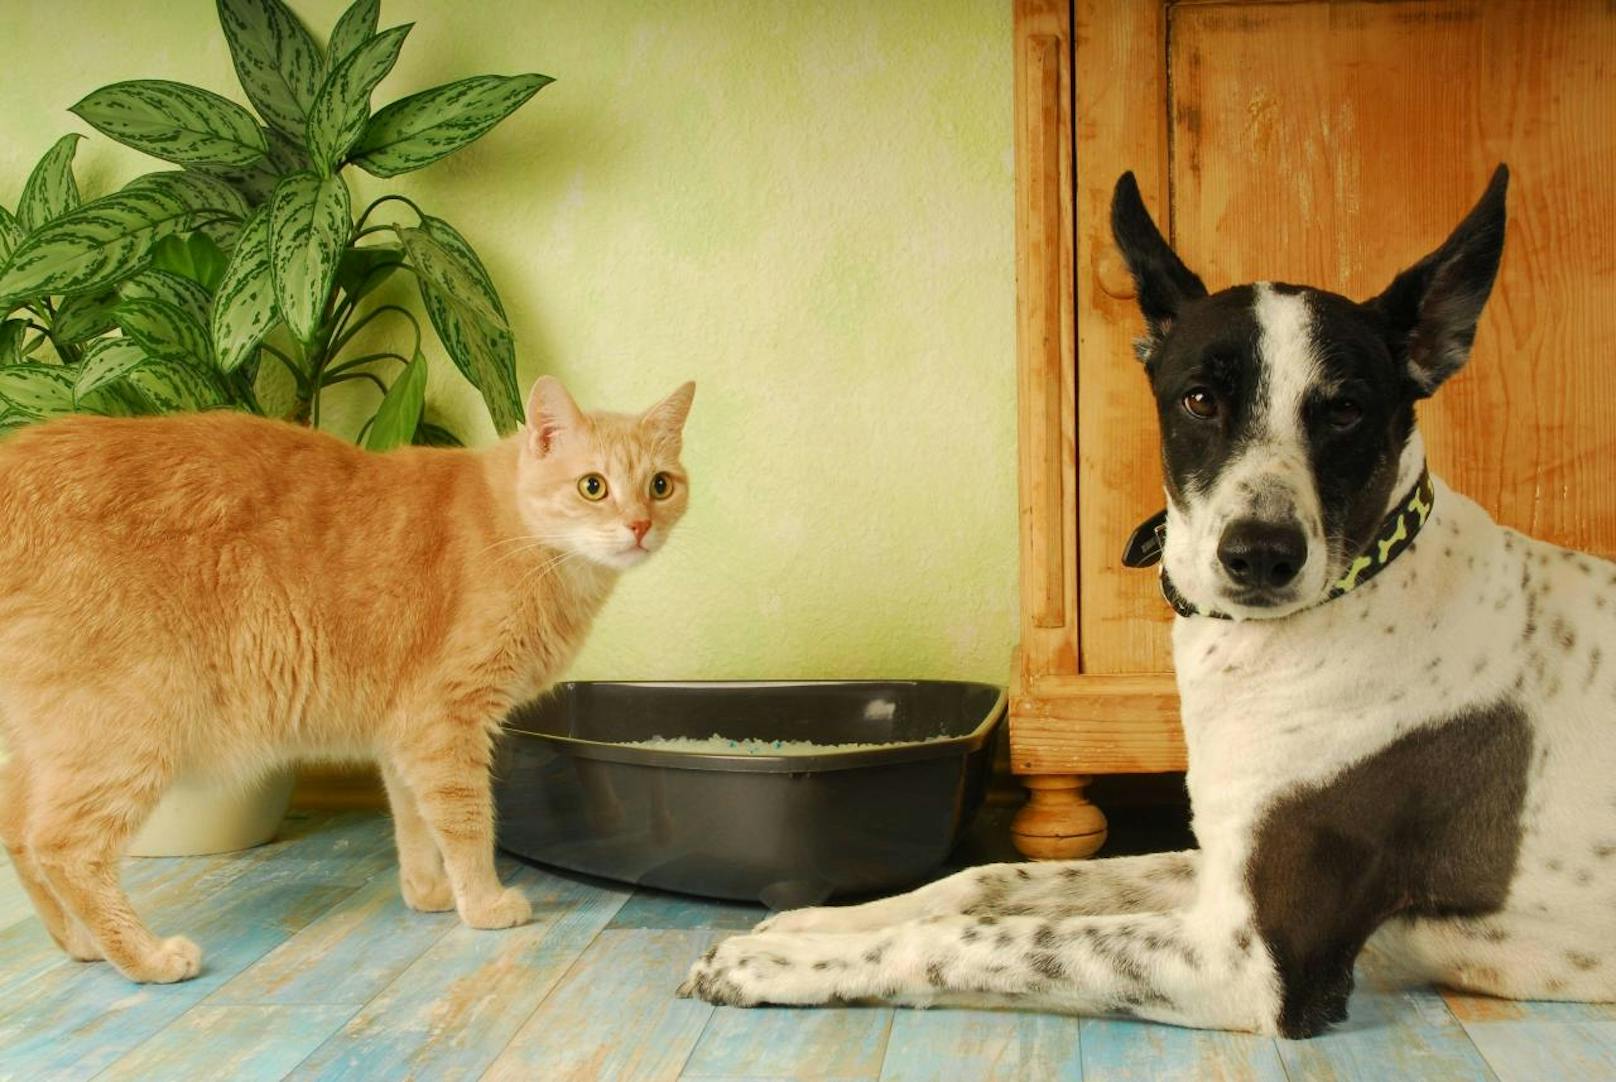 <b>Sagt mal Cheeeese!</b> Katze und Hund posieren für Frauchen.